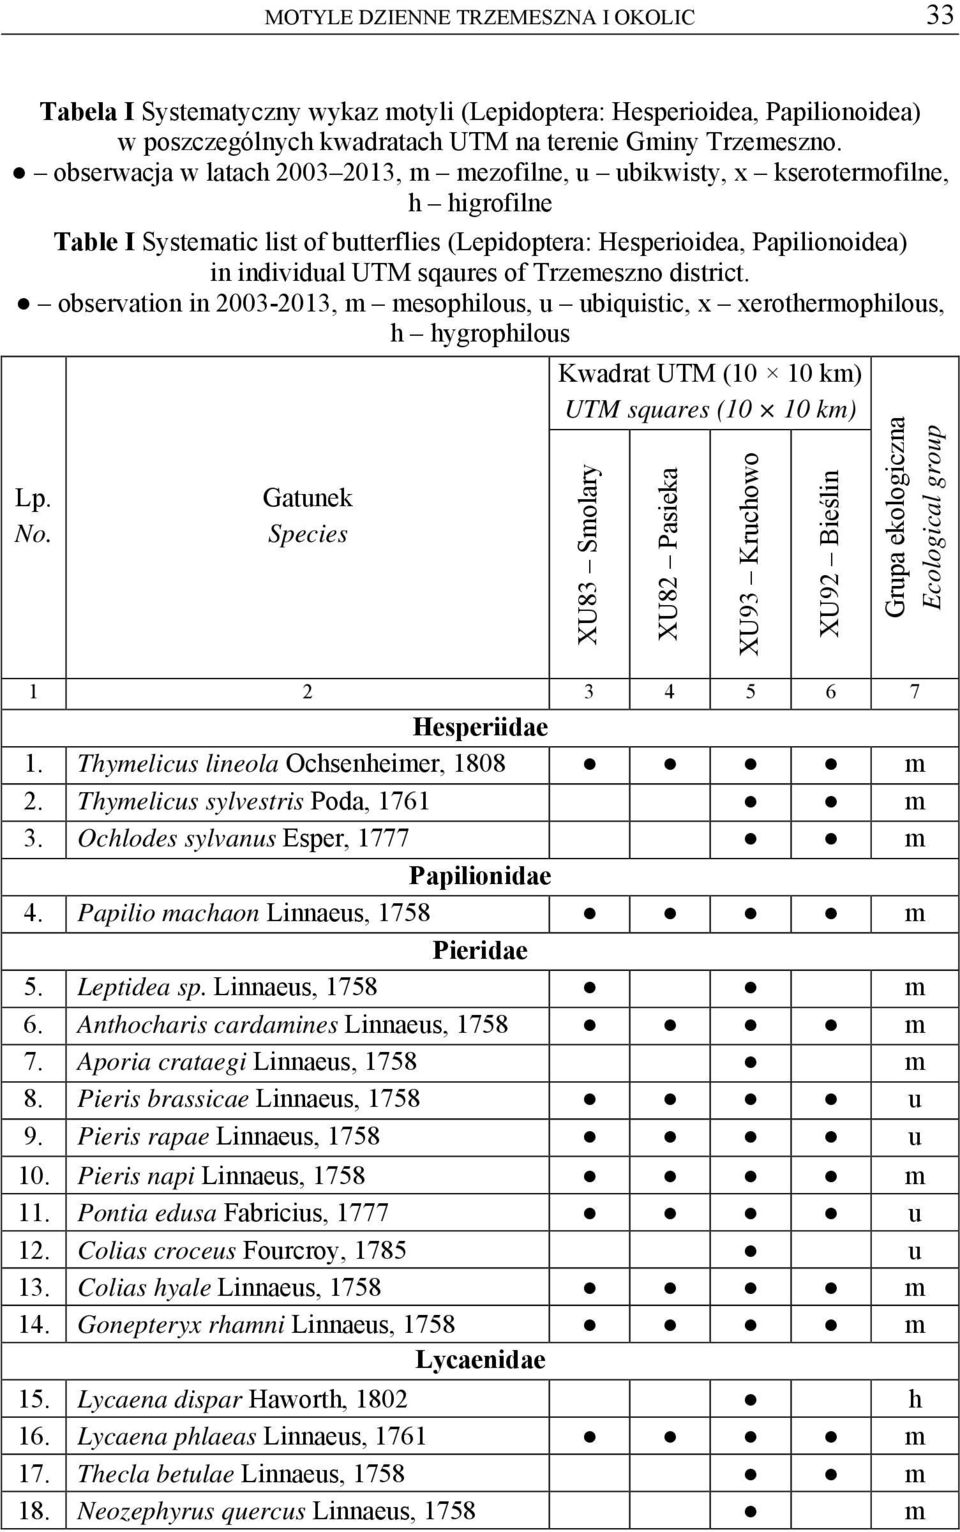 Trzemeszno district. observation in 2003-2013, m mesophilous, u ubiquistic, x xerothermophilous, h hygrophilous Lp. No.